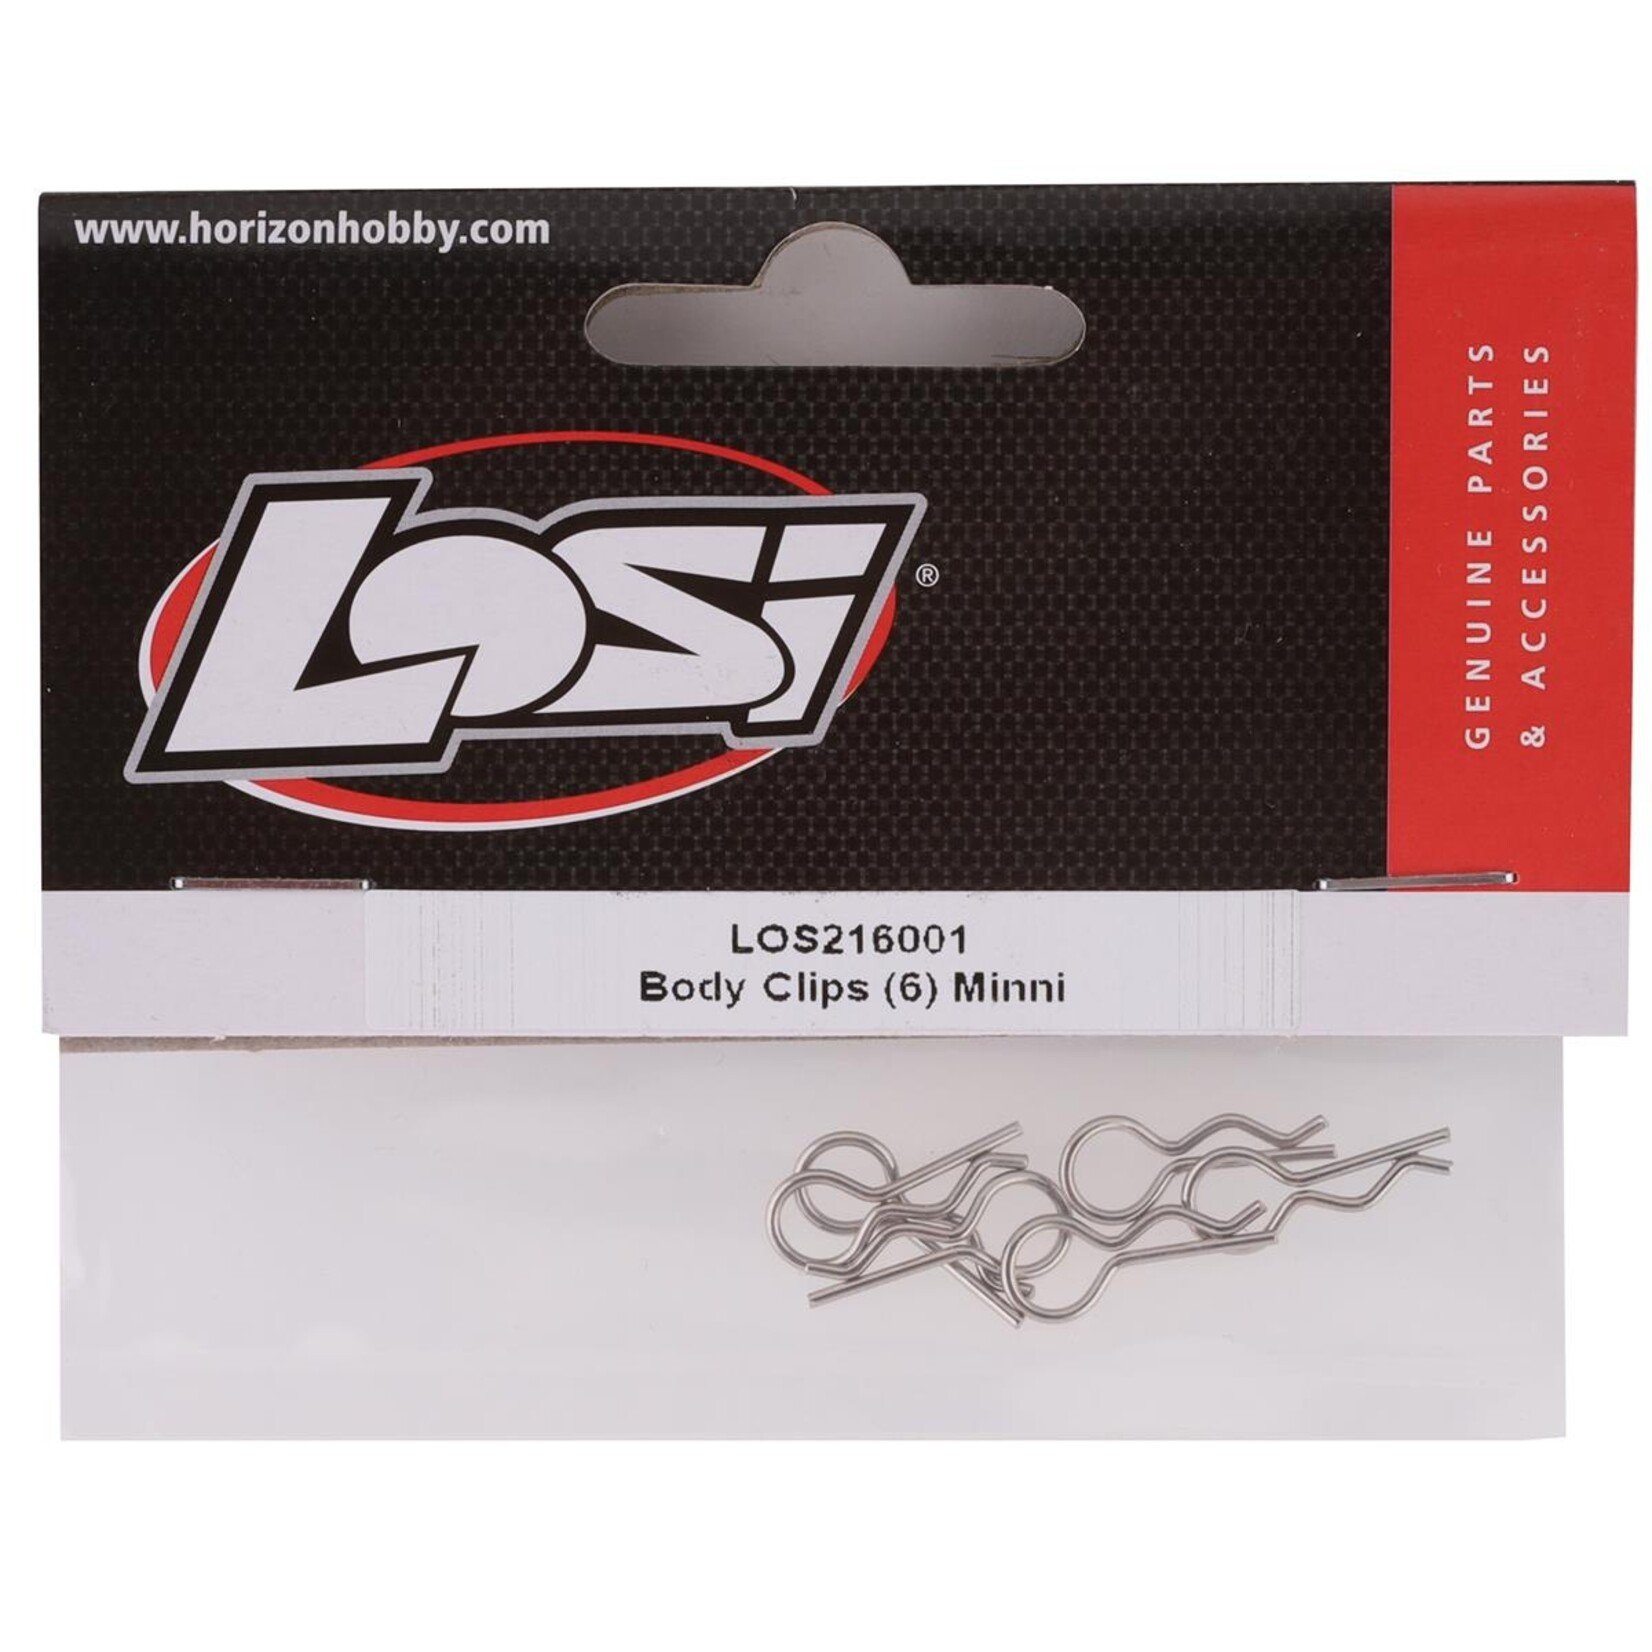 Losi Losi Mini-T 2.0 Body Clips (6) #Los216001